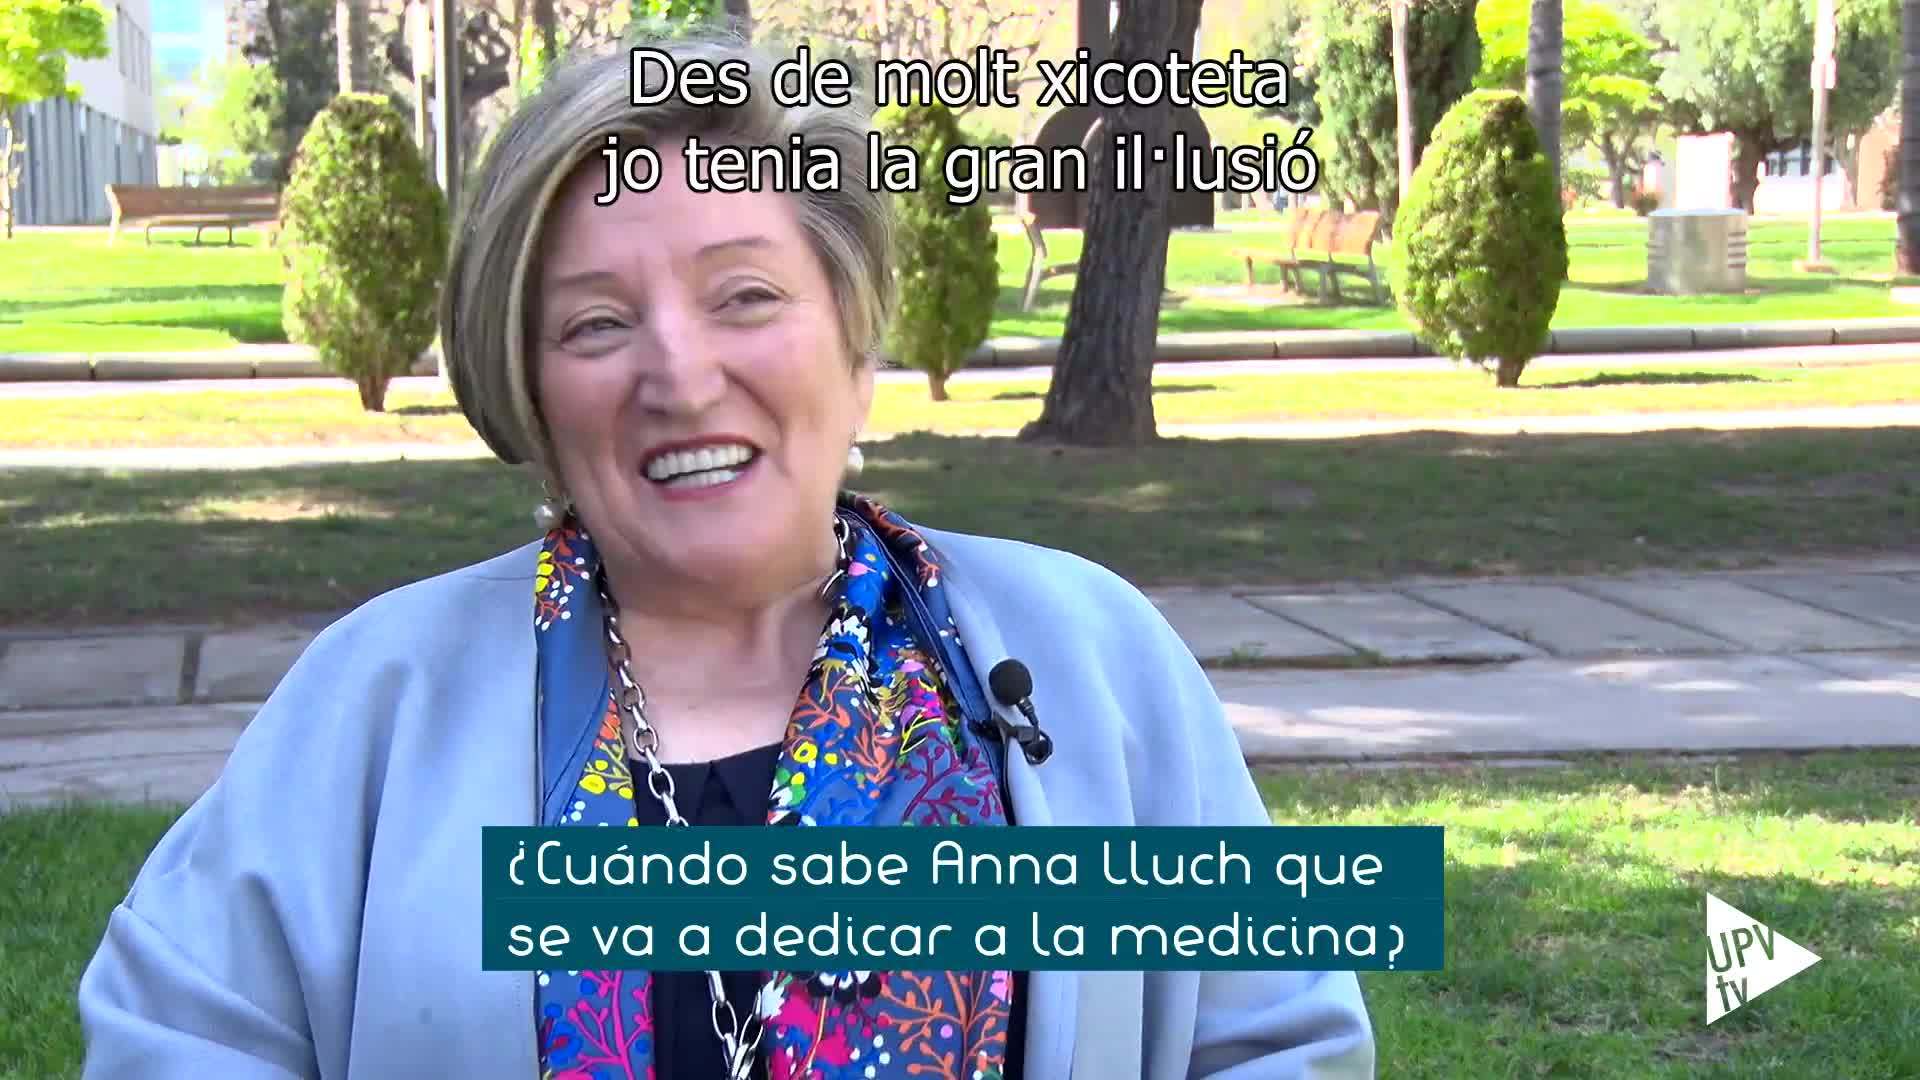 25-06-2020 Mujeres de ciencia: entrevista Anna Lluch (val)